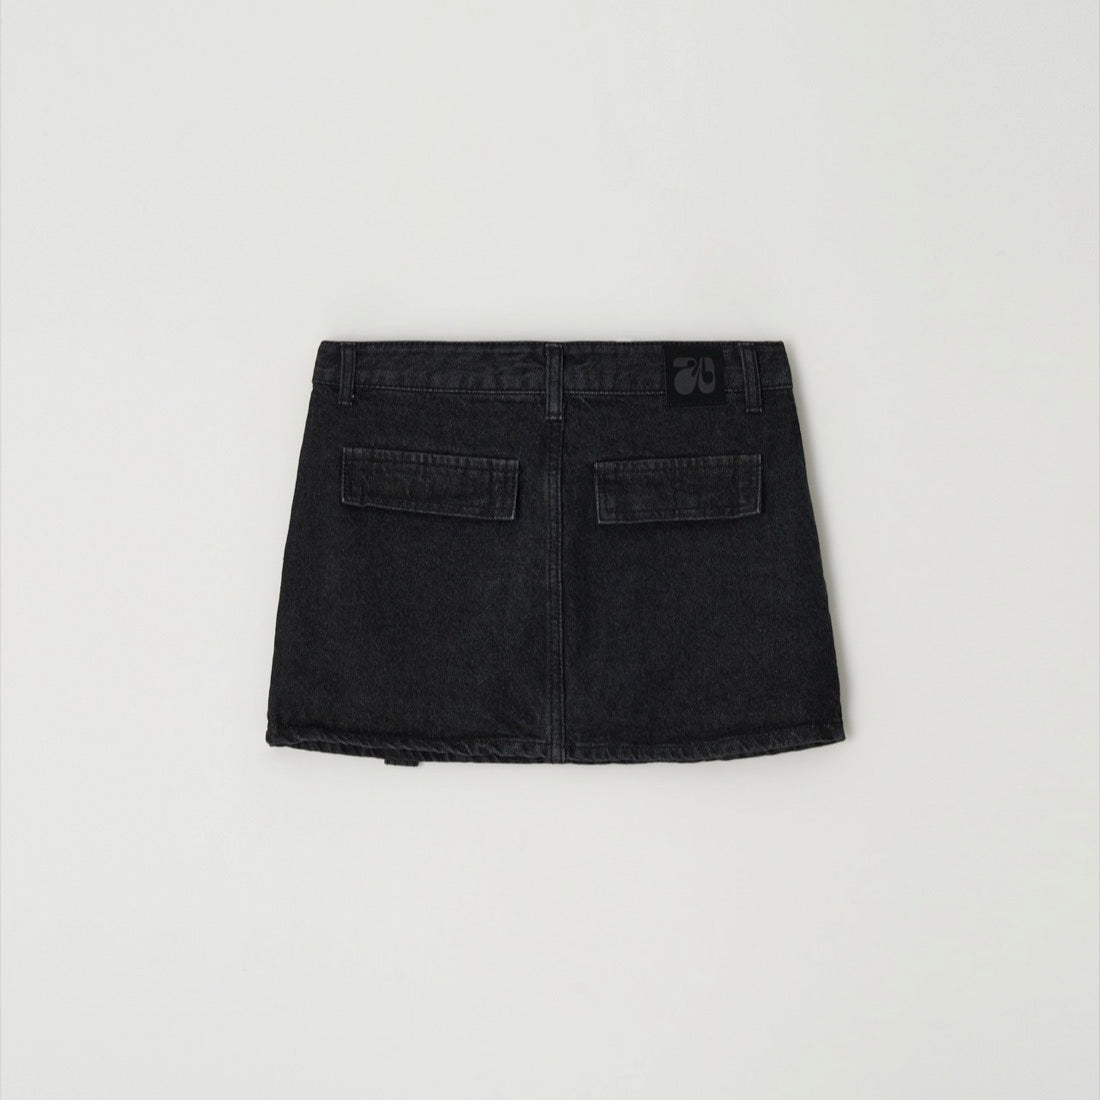 Peter Cargo Mini Skirt